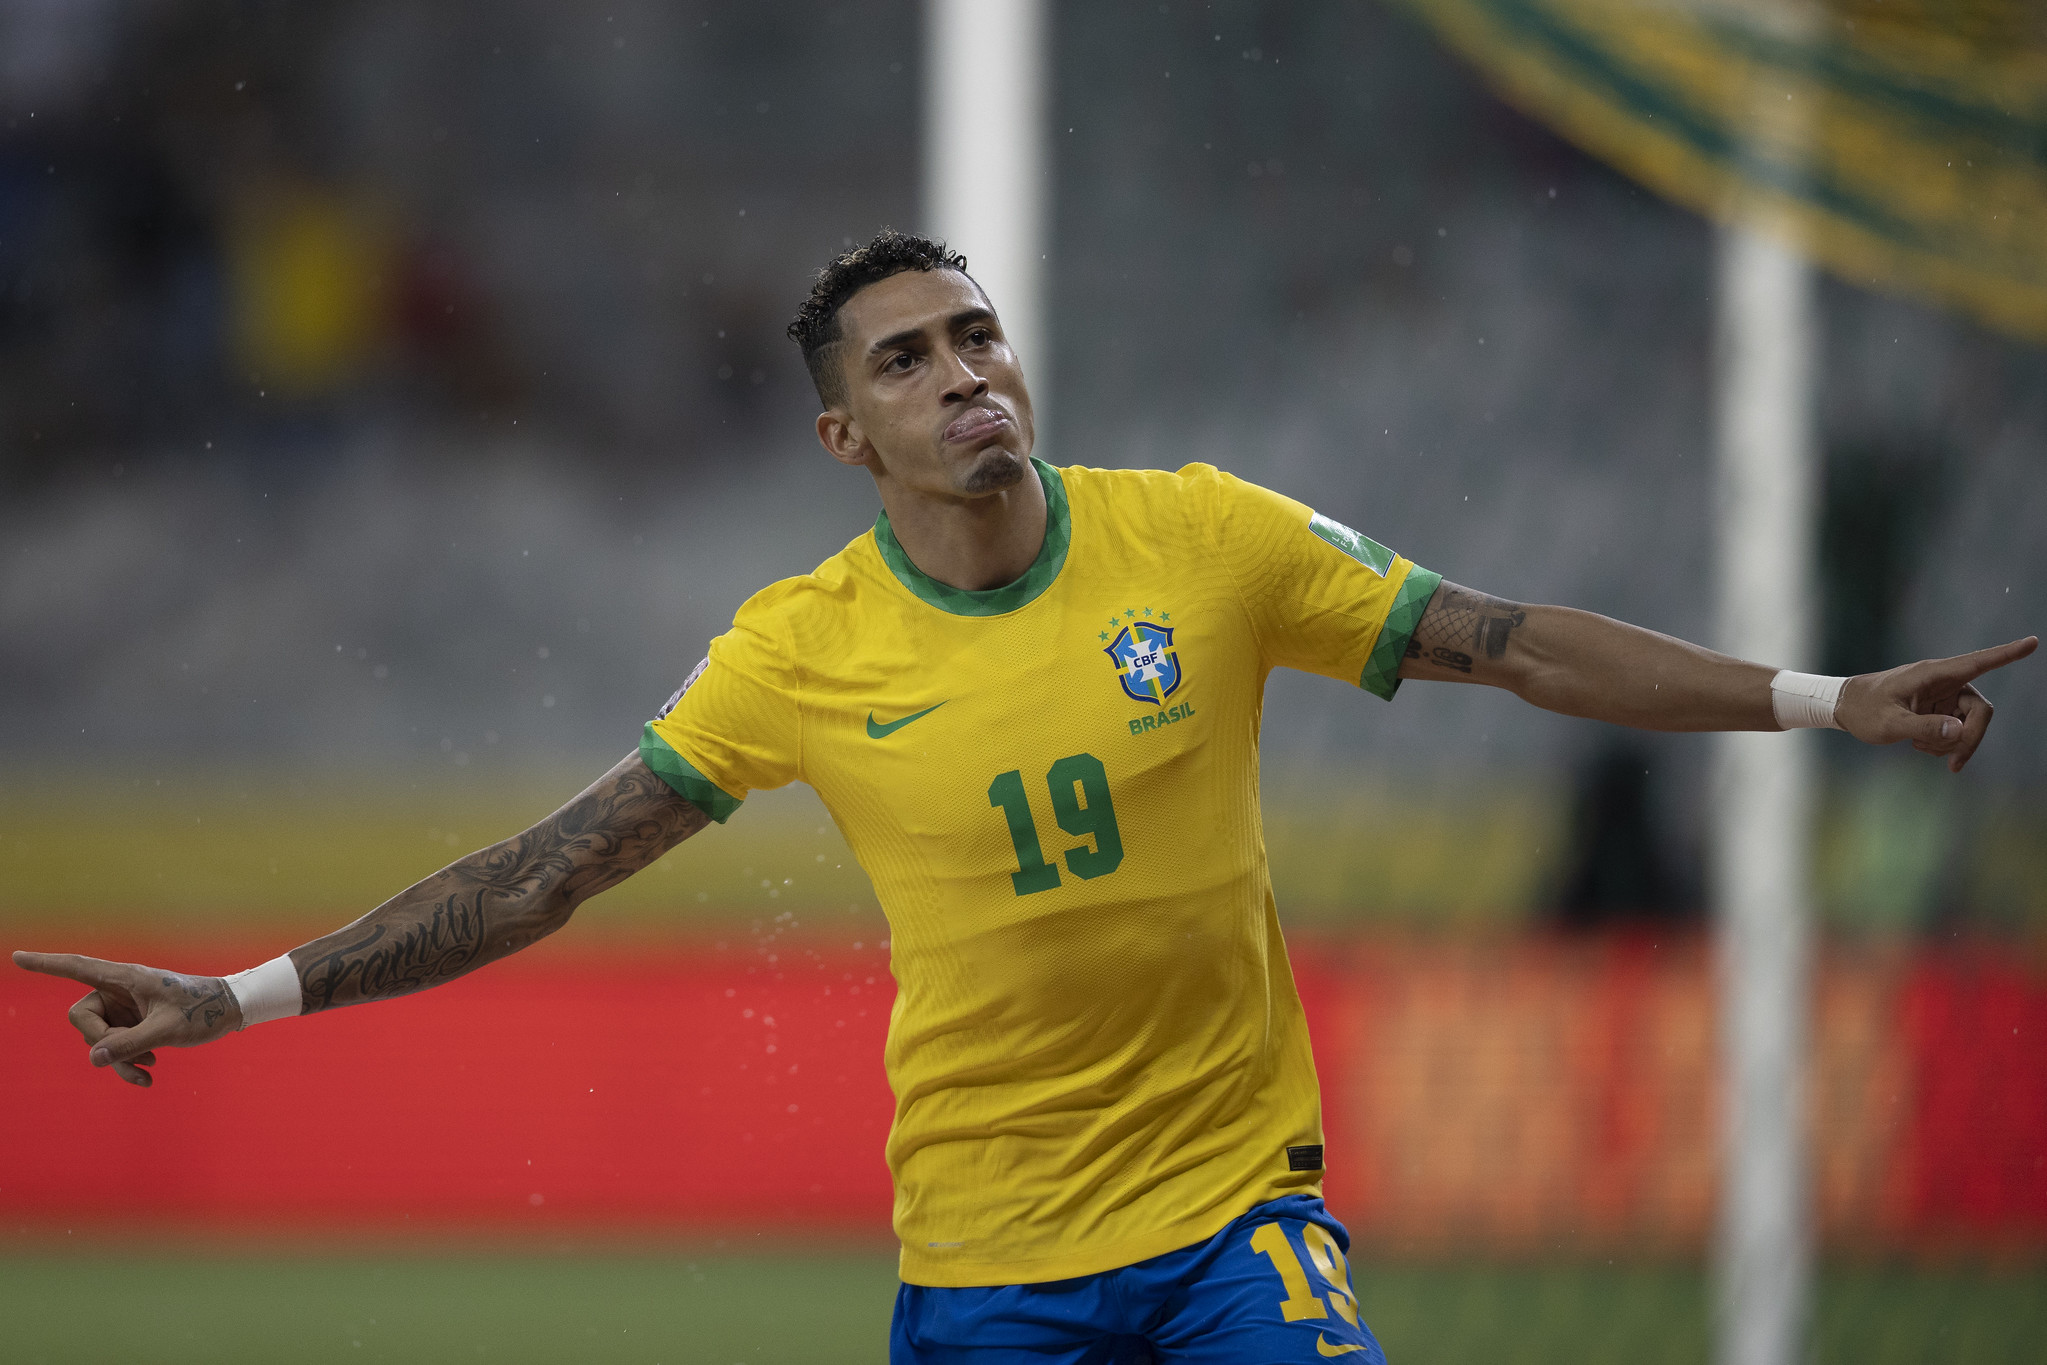 Seleção brasileira joga mal e leva virada de Senegal em amistoso - Placar -  O futebol sem barreiras para você